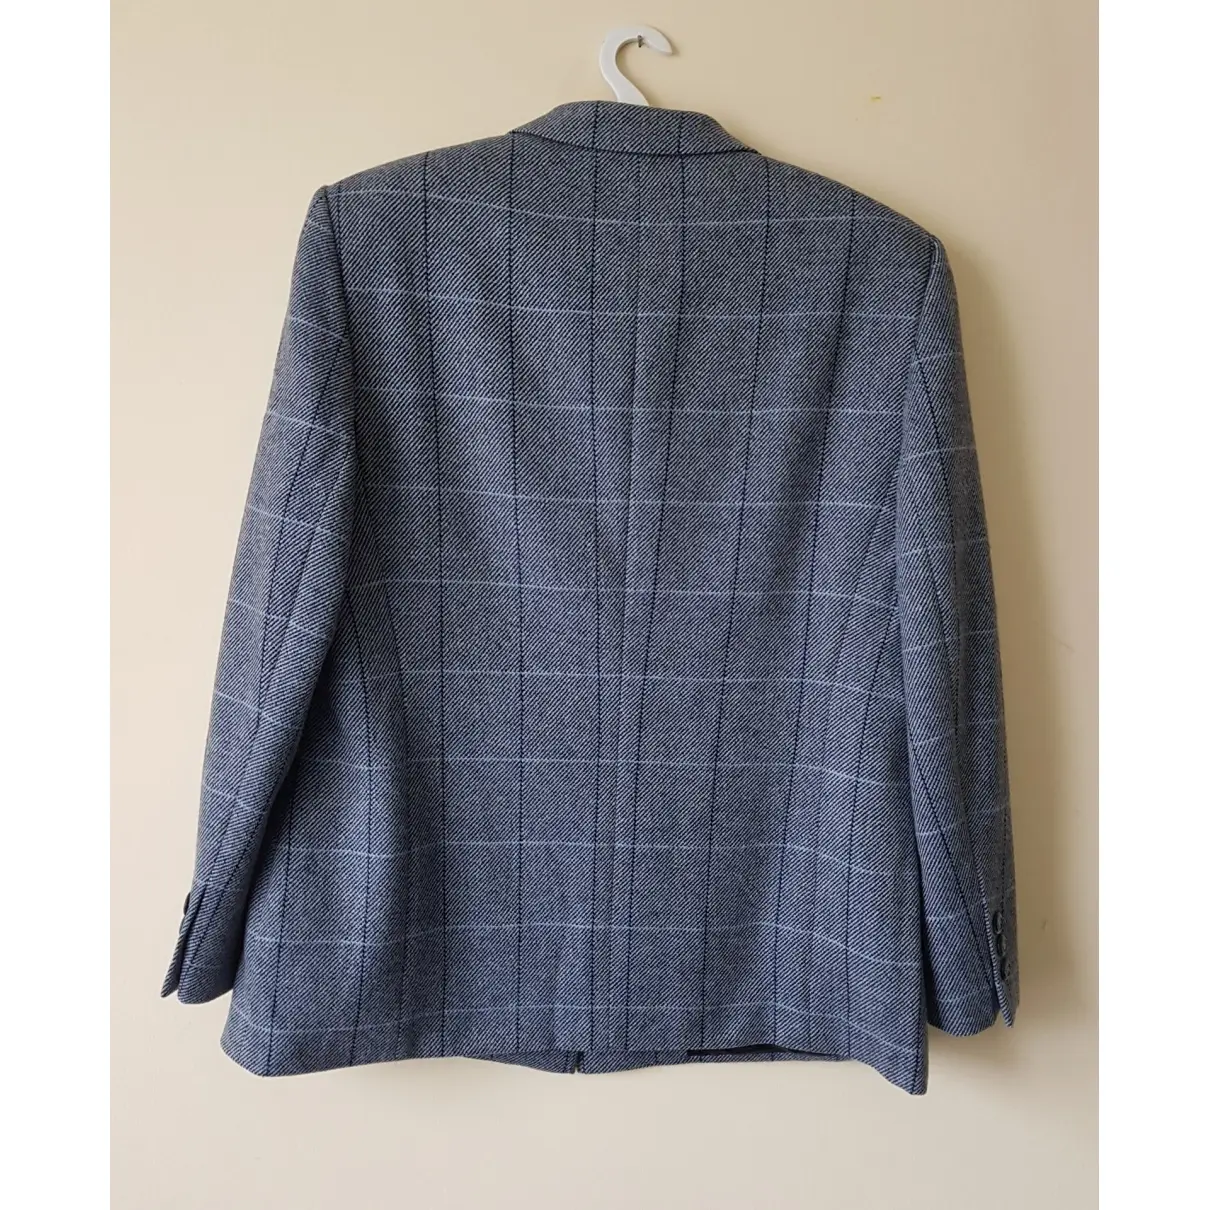 Basler Wool suit jacket for sale